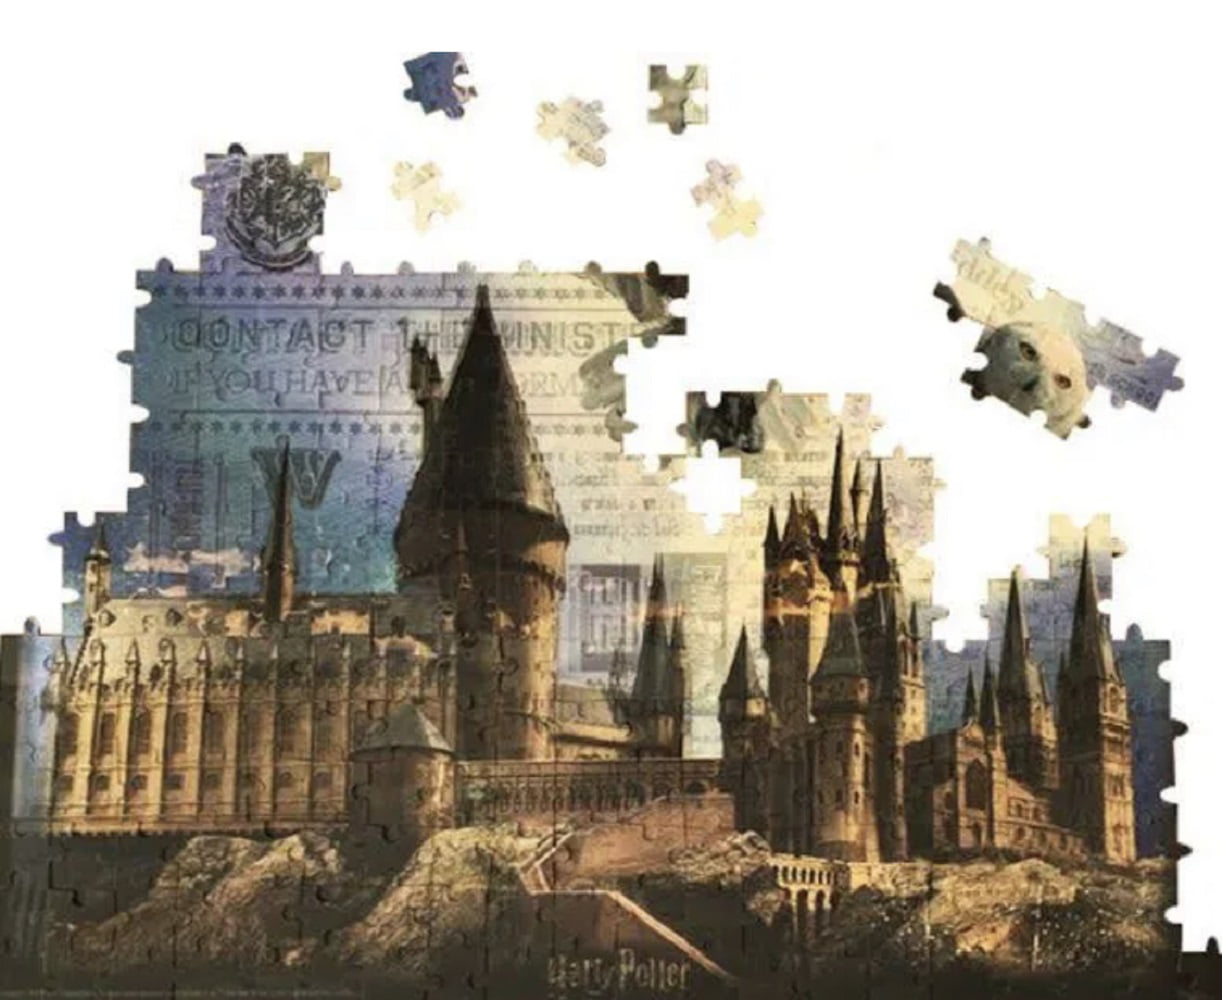 Harry Potter 3D Puzzle Hogwarts Castle – Flying Pig Toys